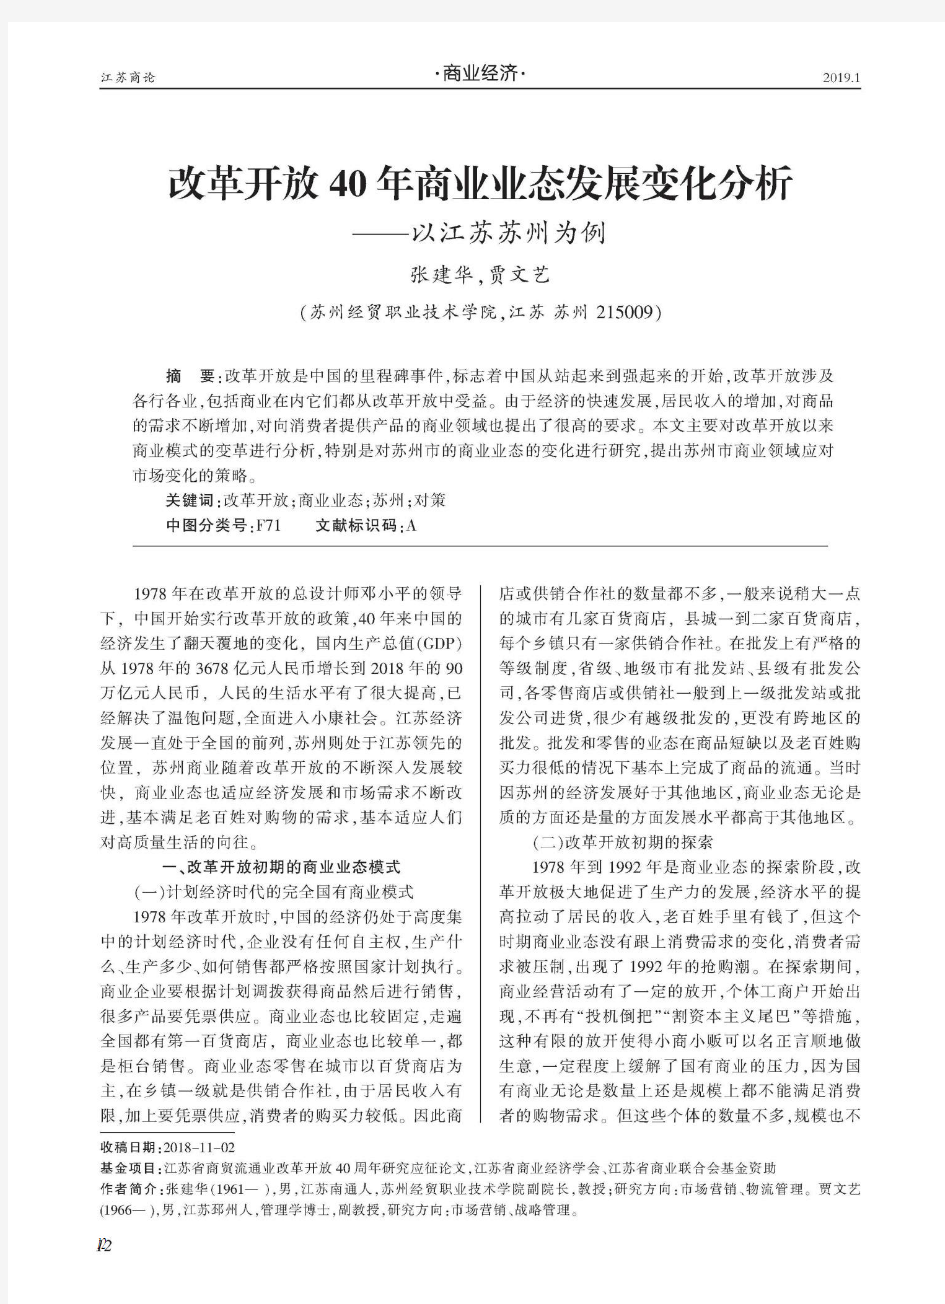 改革开放40年商业业态发展变化分析——以江苏苏州为例